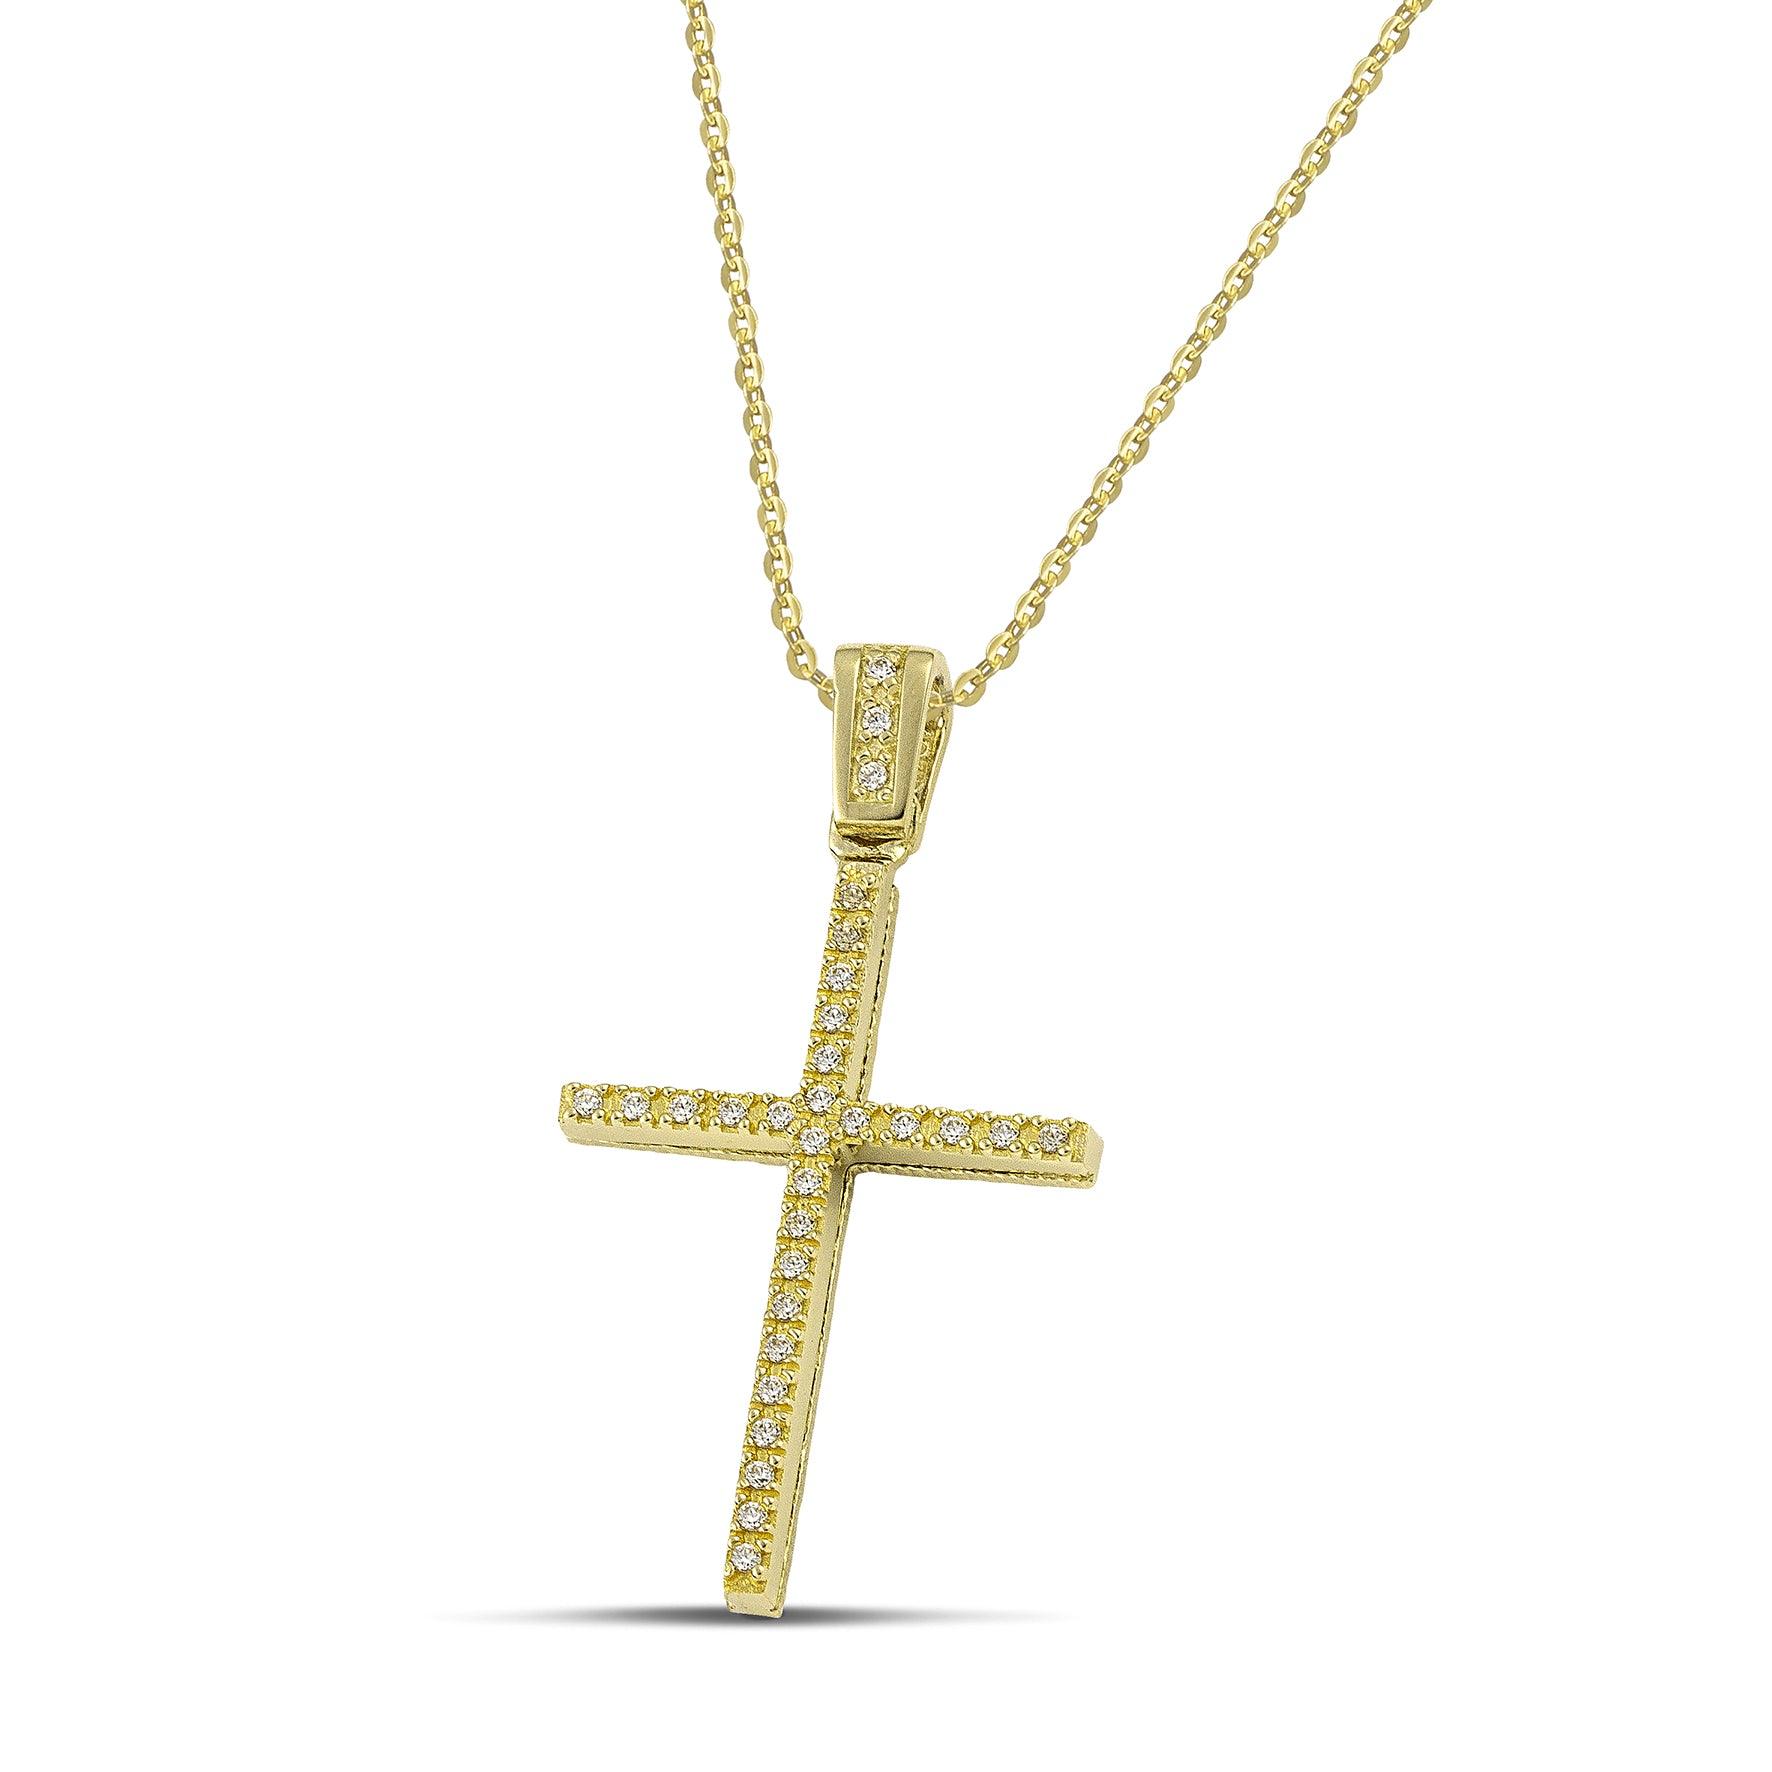 Γυναικείος χρυσός σταυρός για βάπτιση με ζιργκόν, με κλασσική χρυσή αλυσίδα.